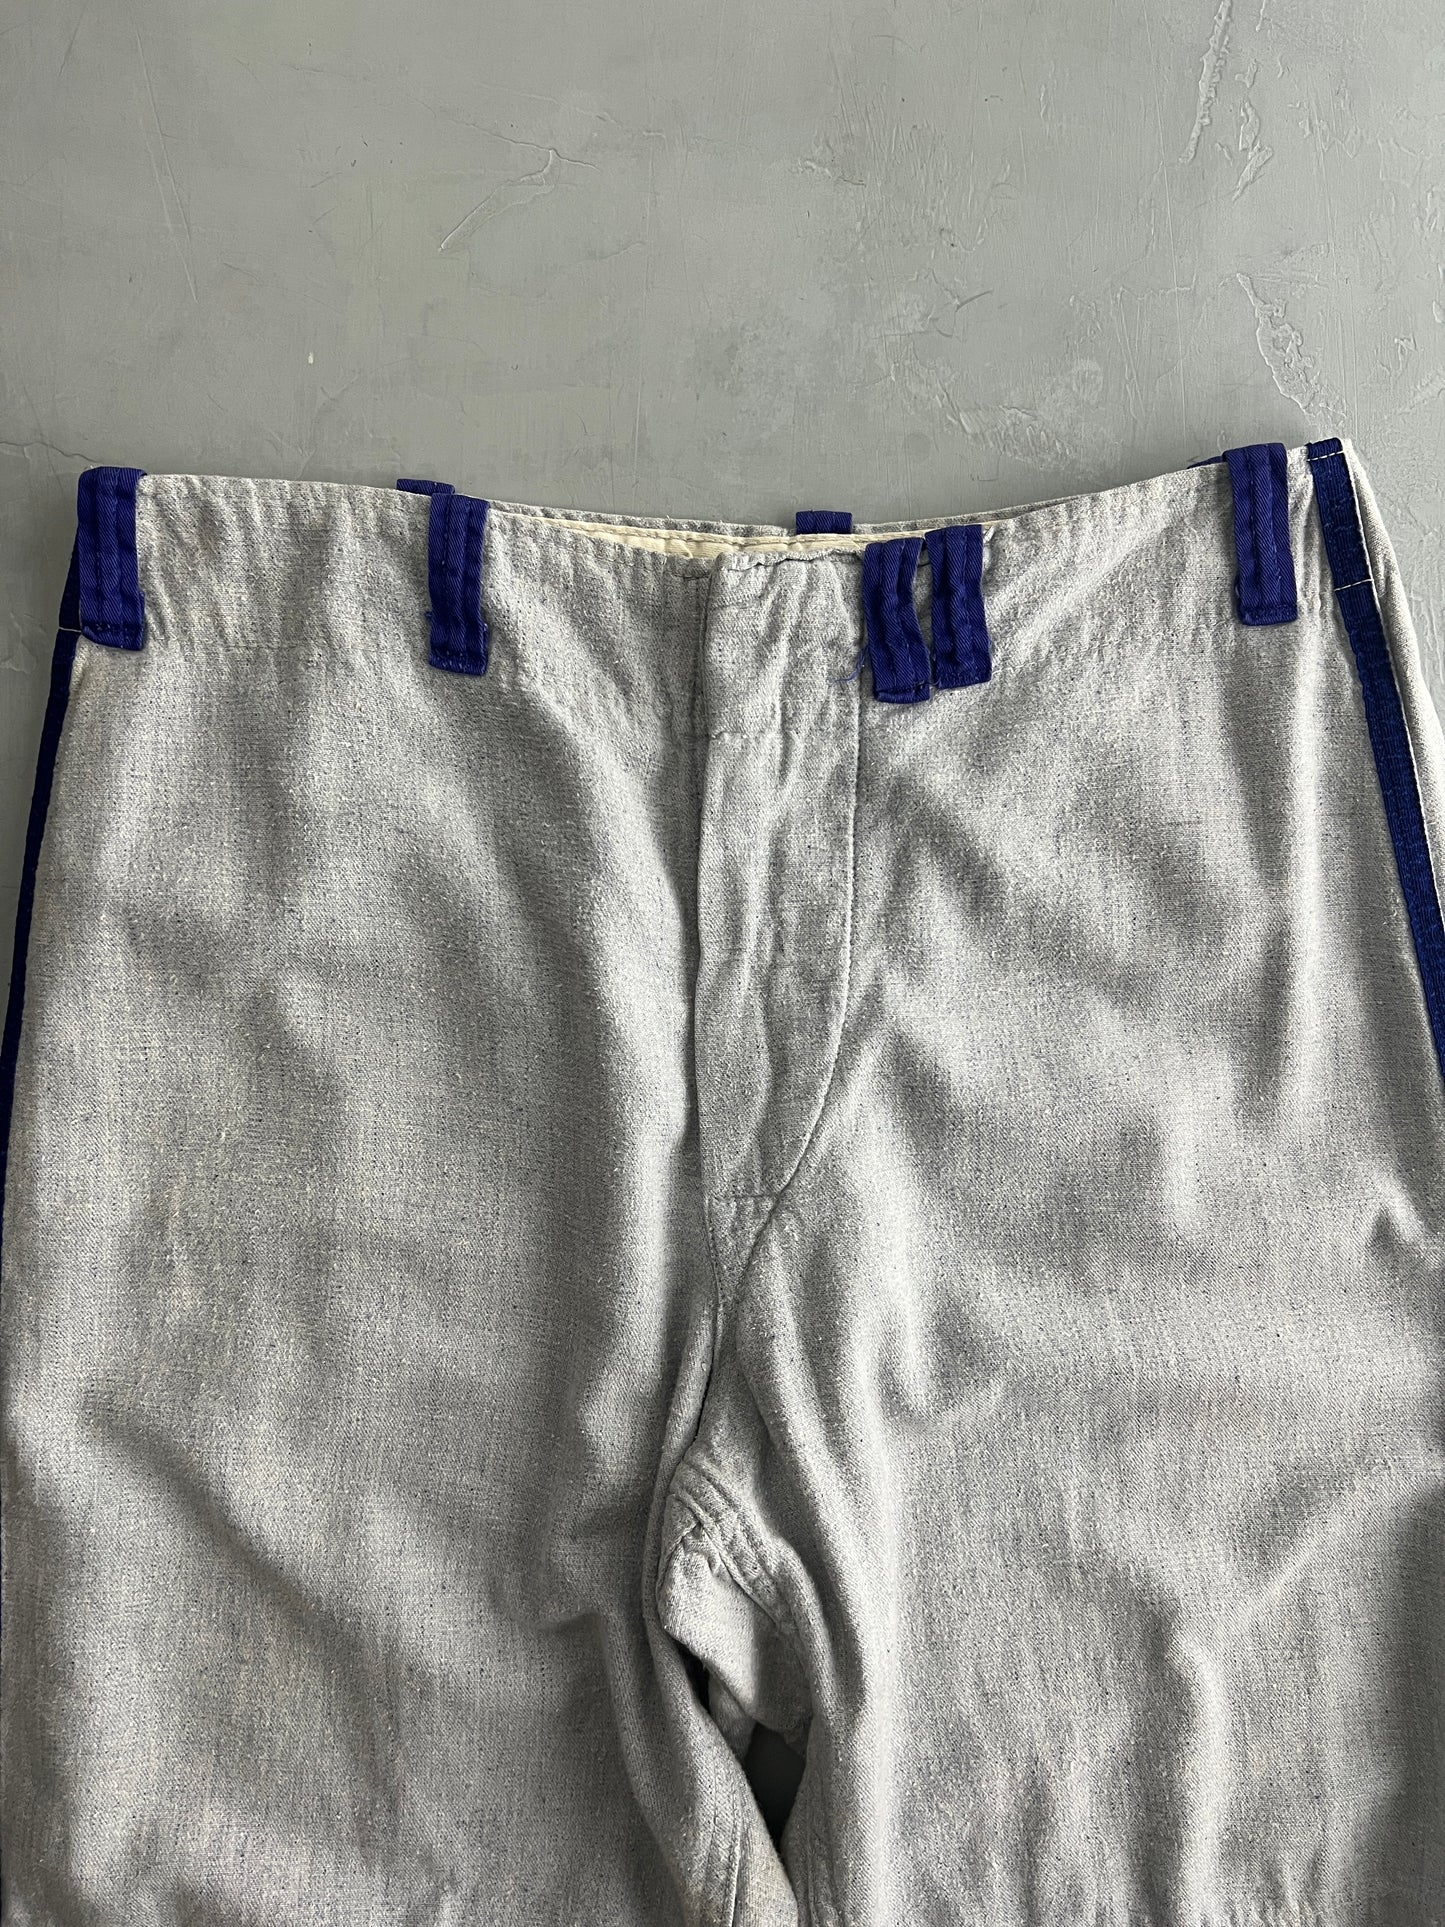 Flannel Baseball Pants [36"]